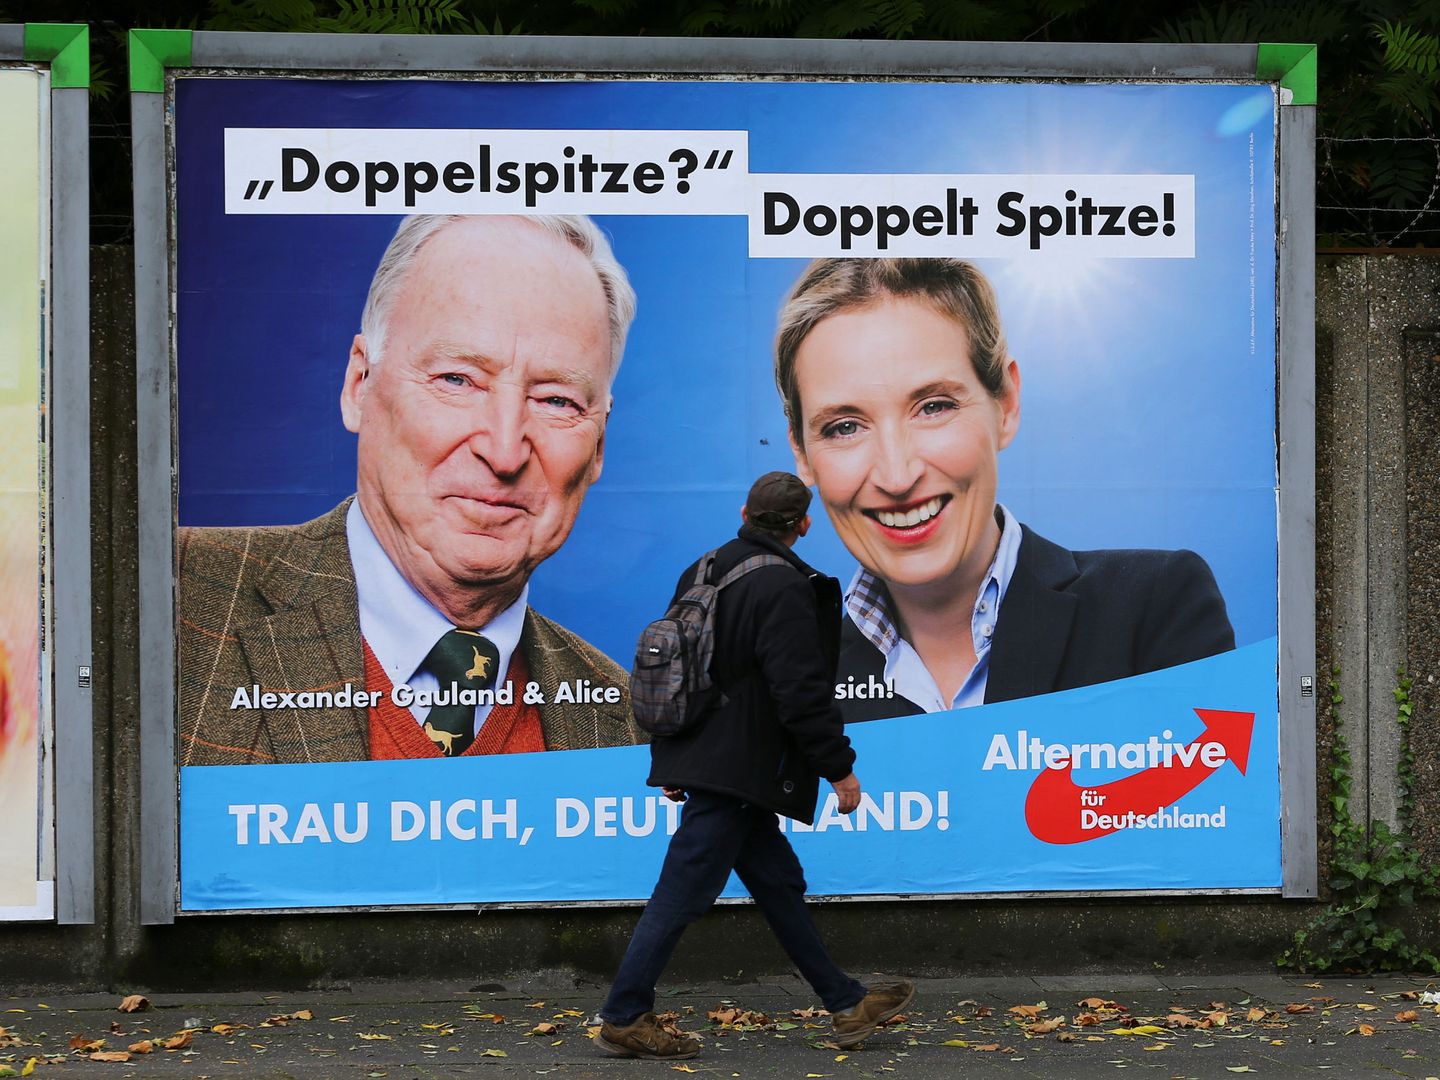 Alexander Gauland y Alice Weidel en un poster electoral de Alternativa para Alemania, en Duisburg. (Reuters)